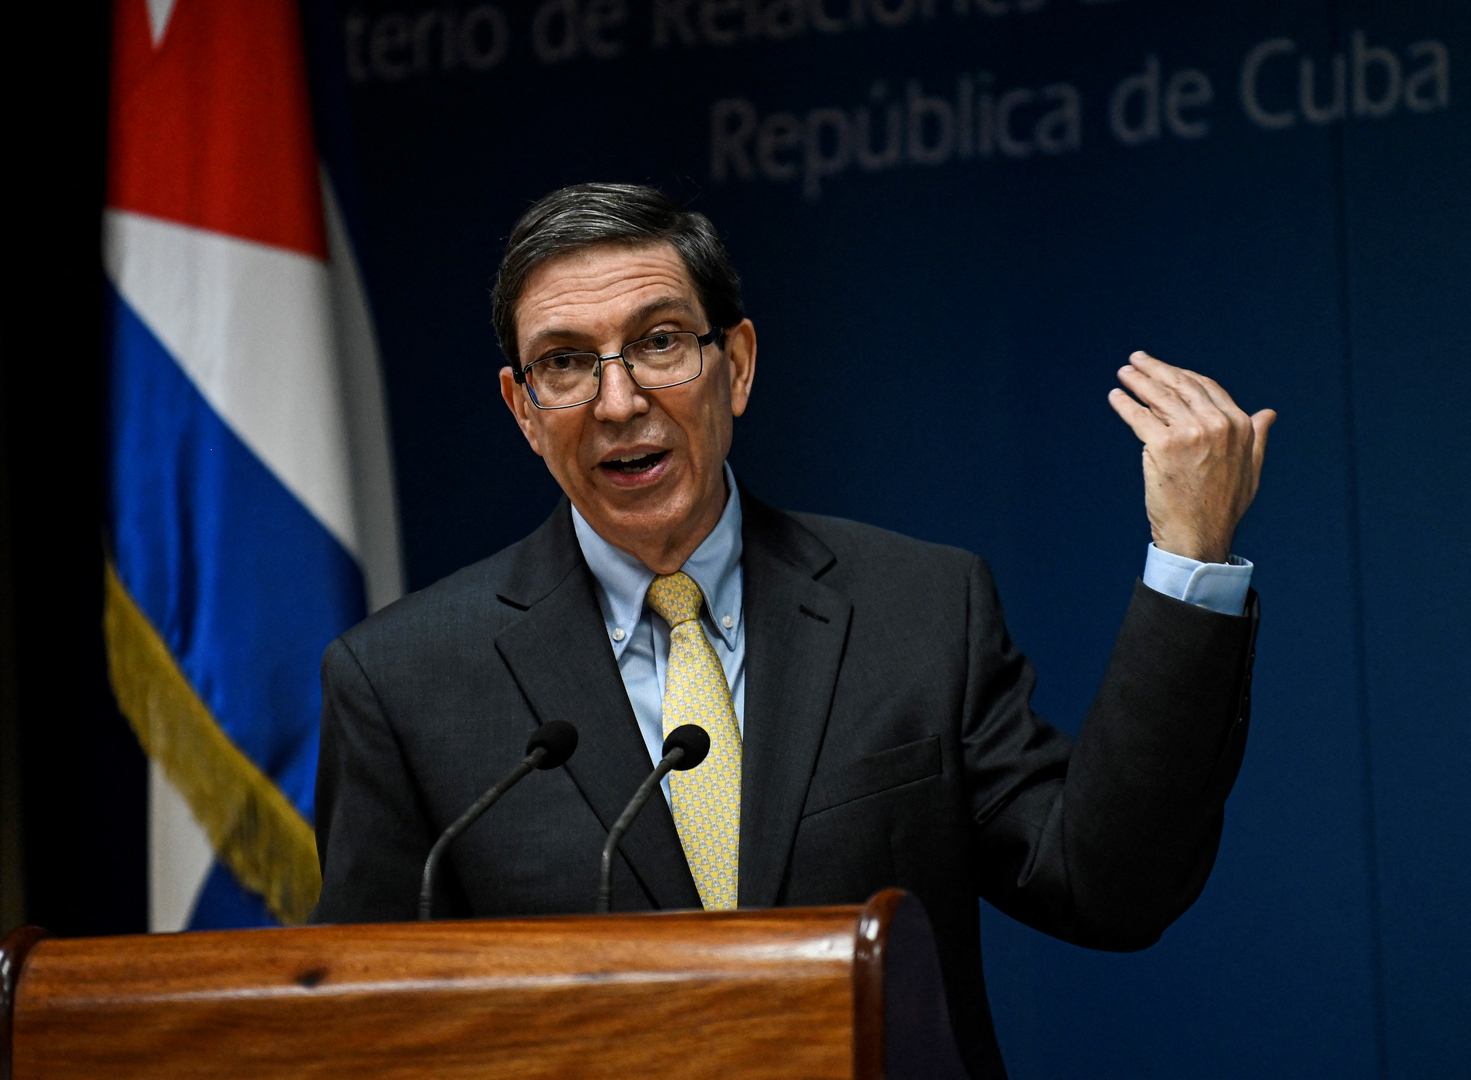 كوبا تعلن عن تعرض سفارتها في باريس للاعتداء بزجاجات حارقة